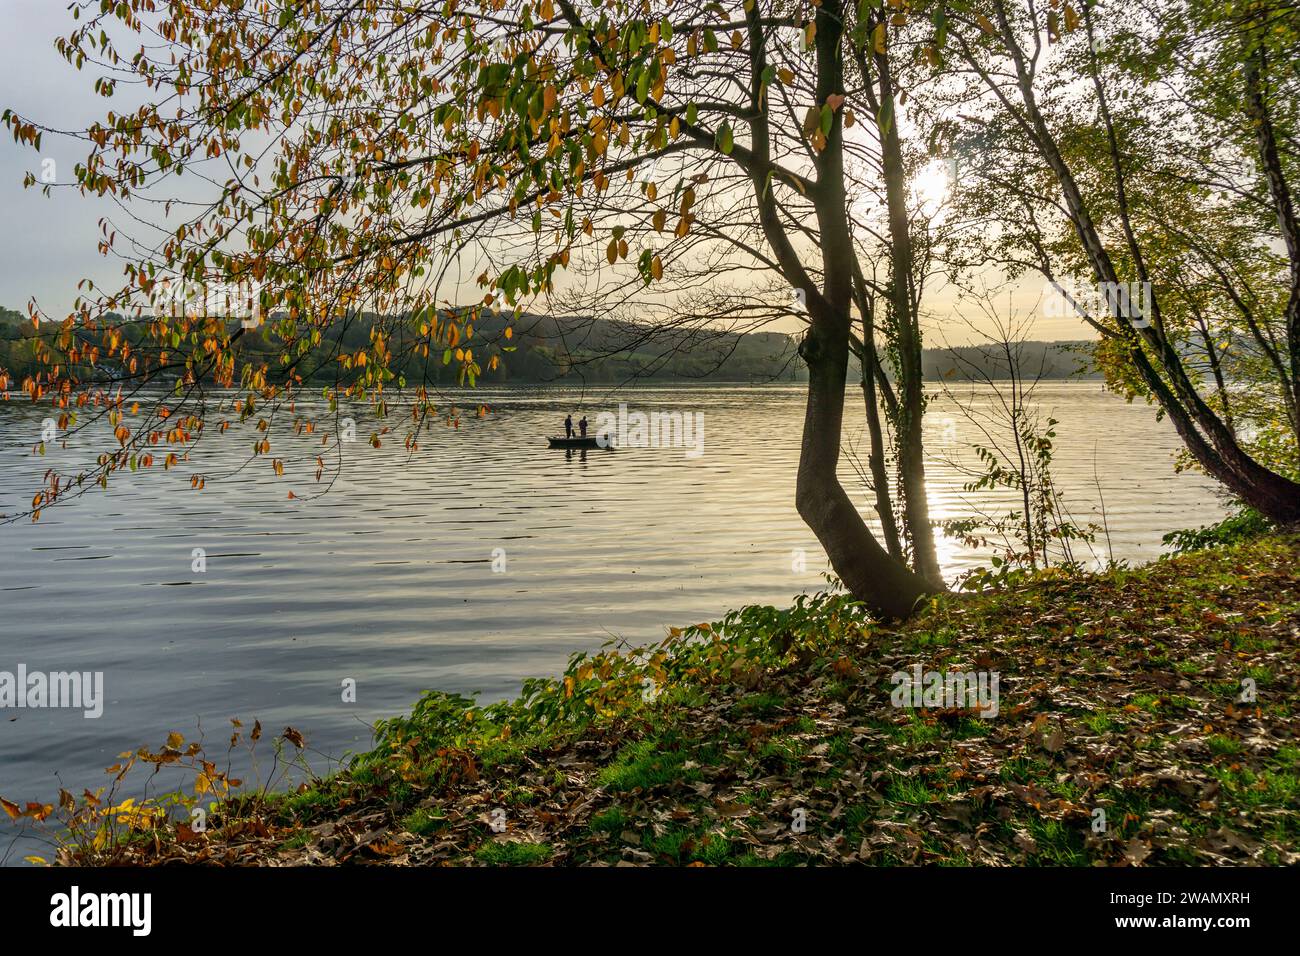 Lago Baldeney, autunno, barche a remi con pescatori, Essen, NRW, Germania, Foto Stock